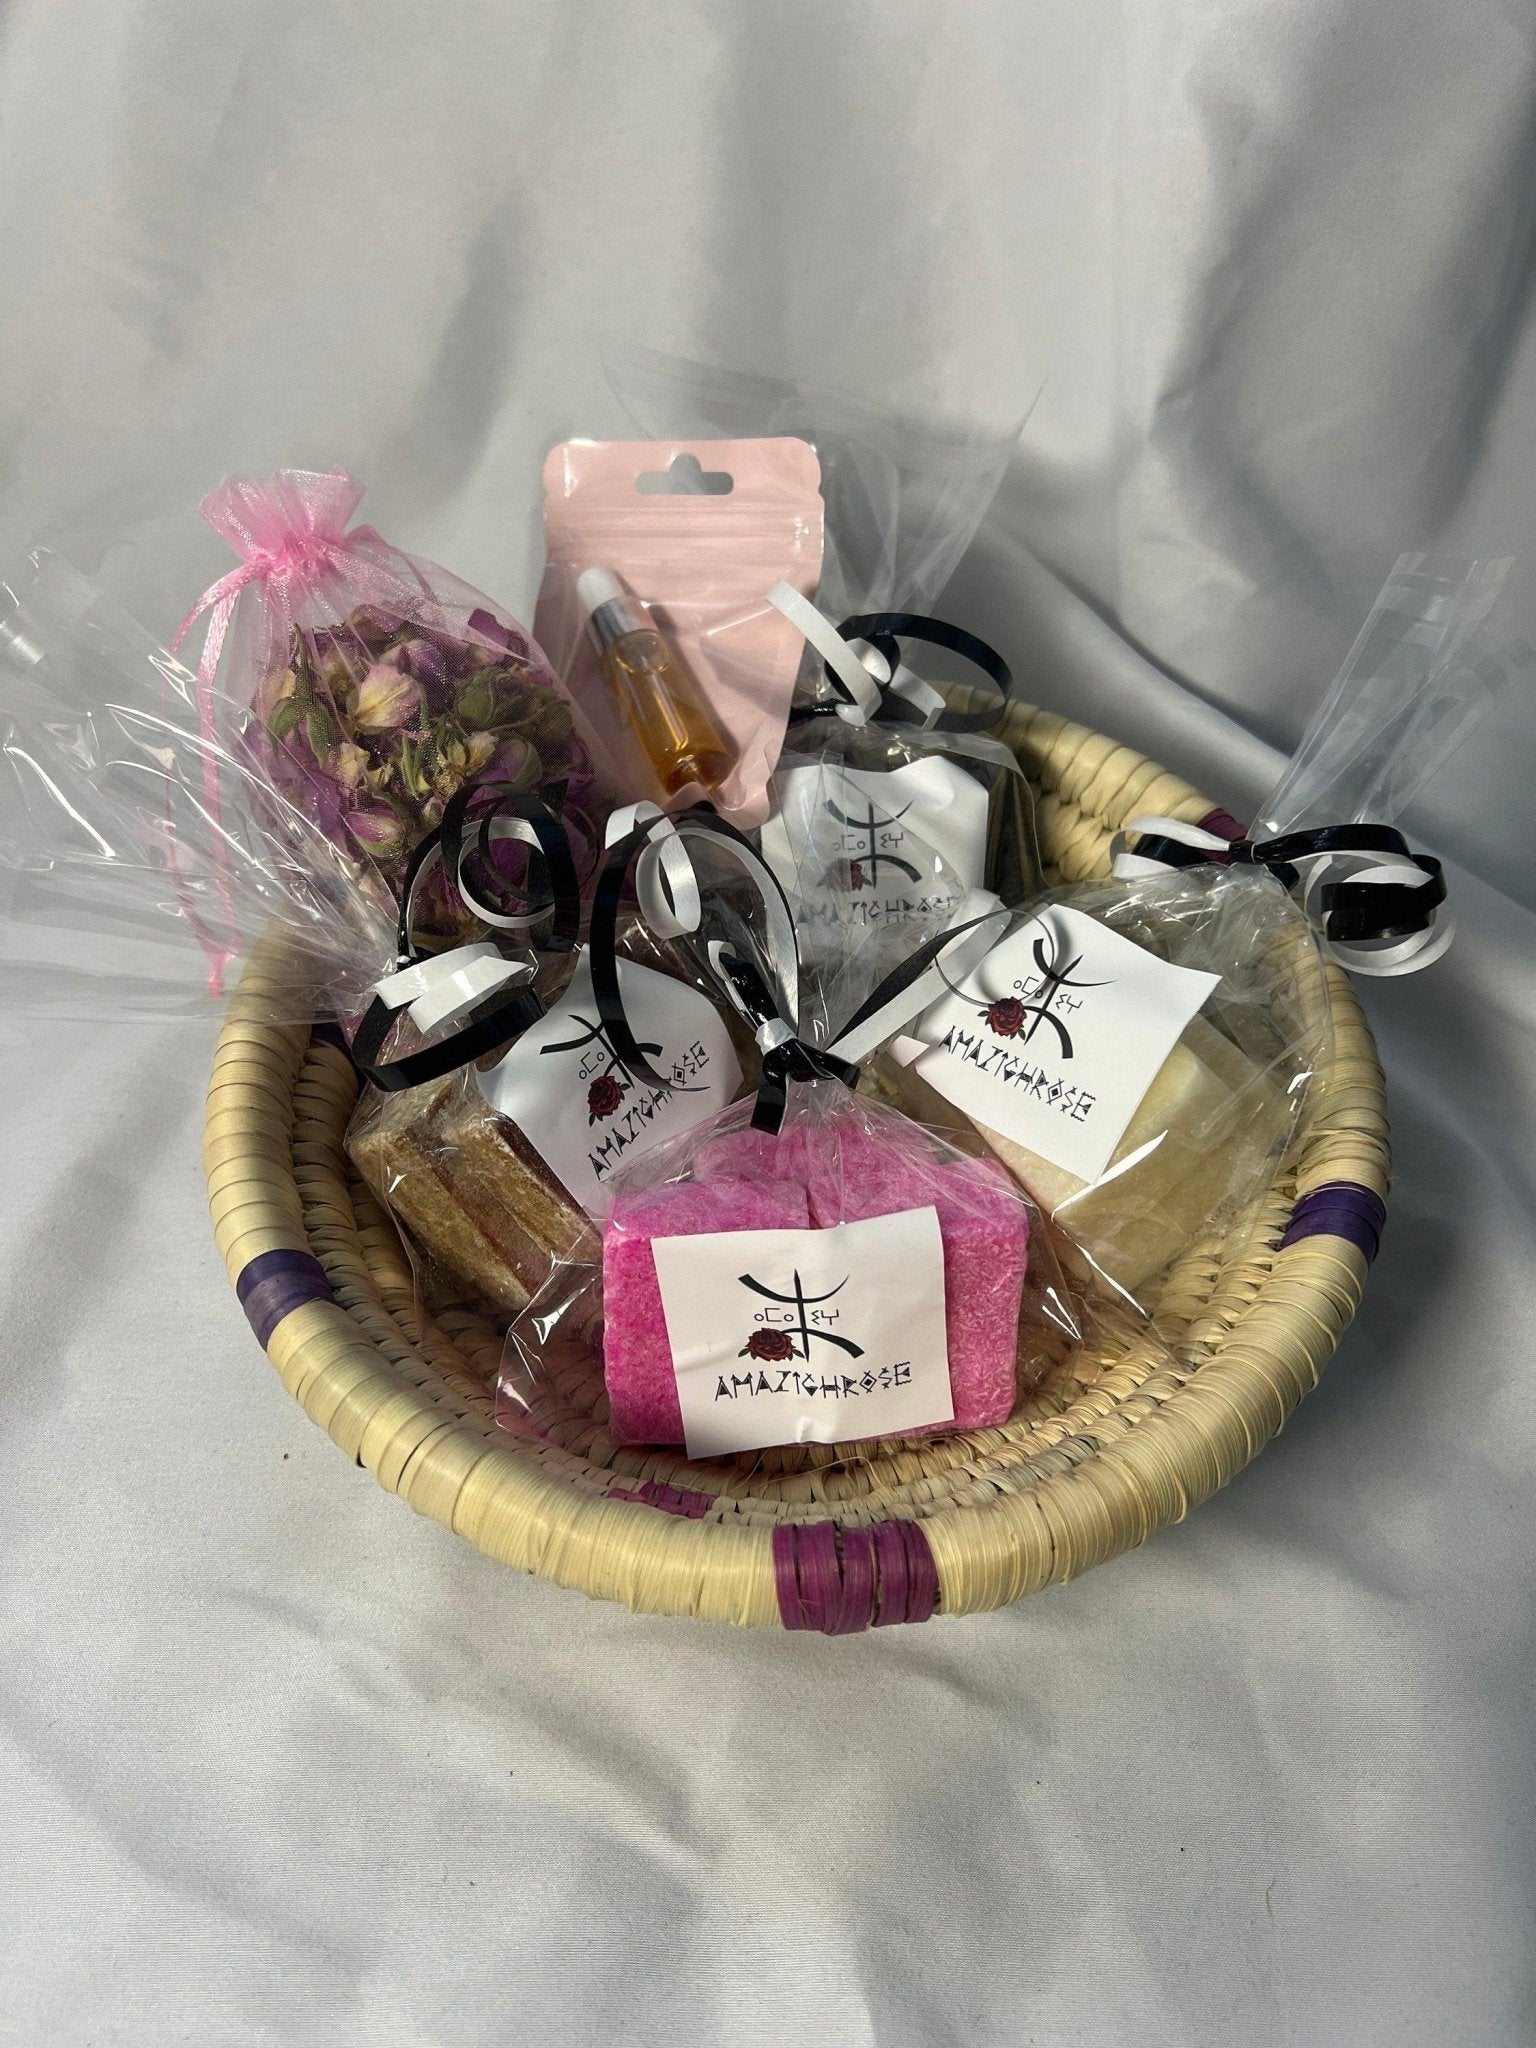 Amber Gift Basket - Amazighrose